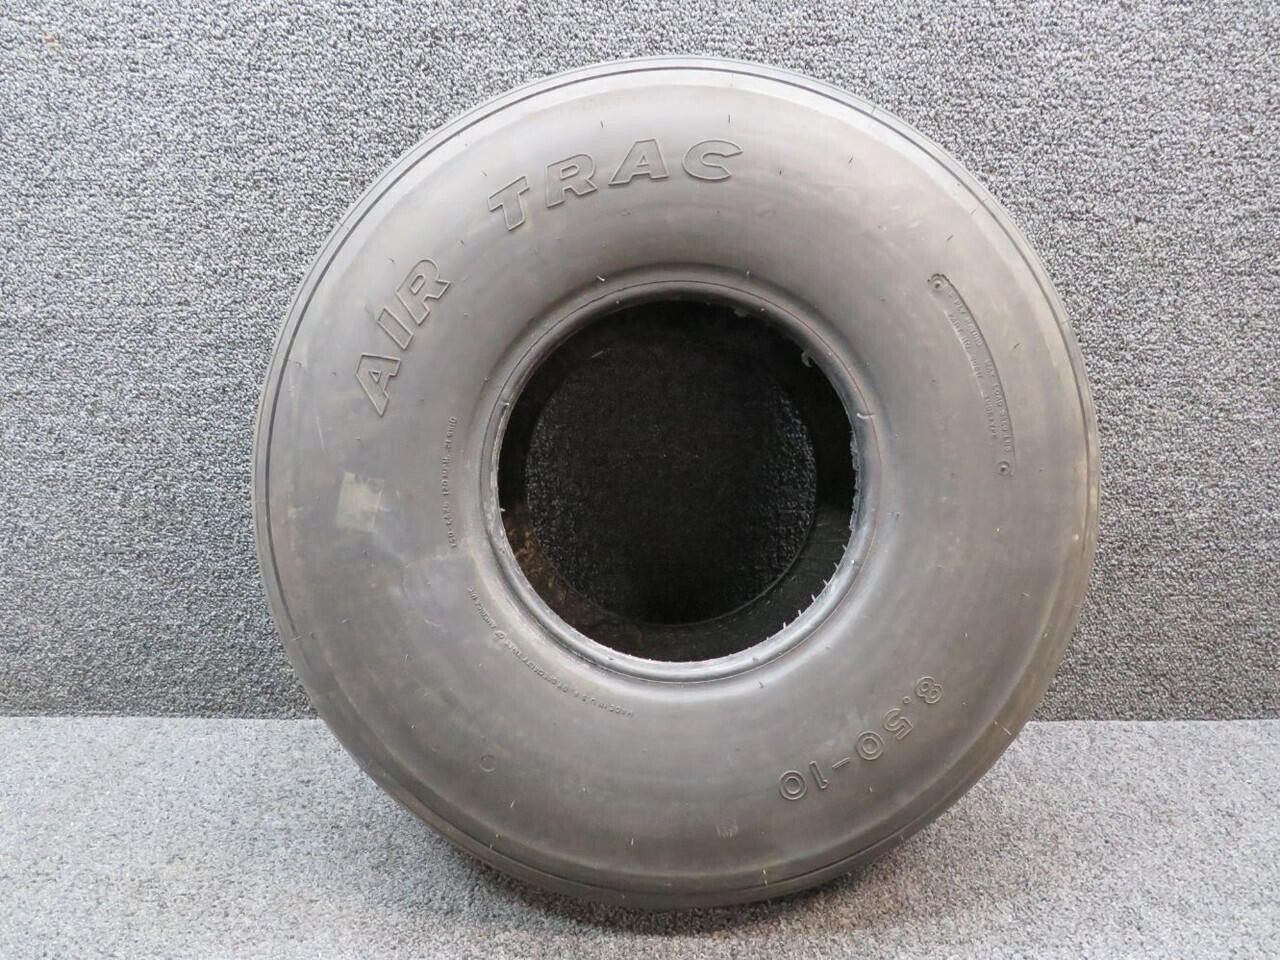 30617 Air-Trac 8.50-10 Tire (6-Ply, 120 mph)